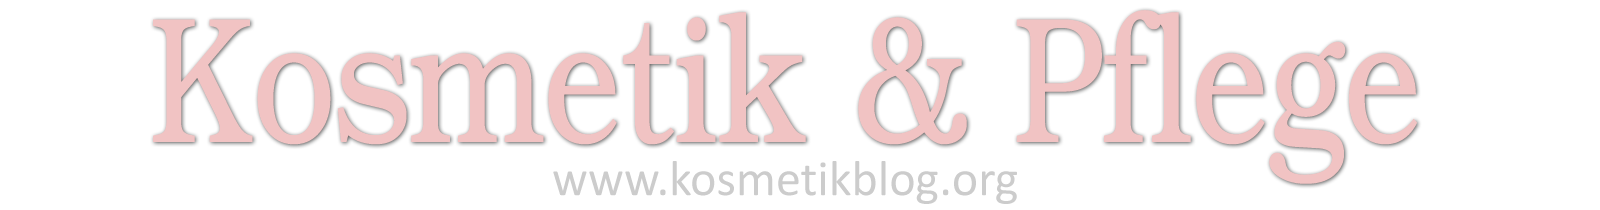 Kosmetik Blog